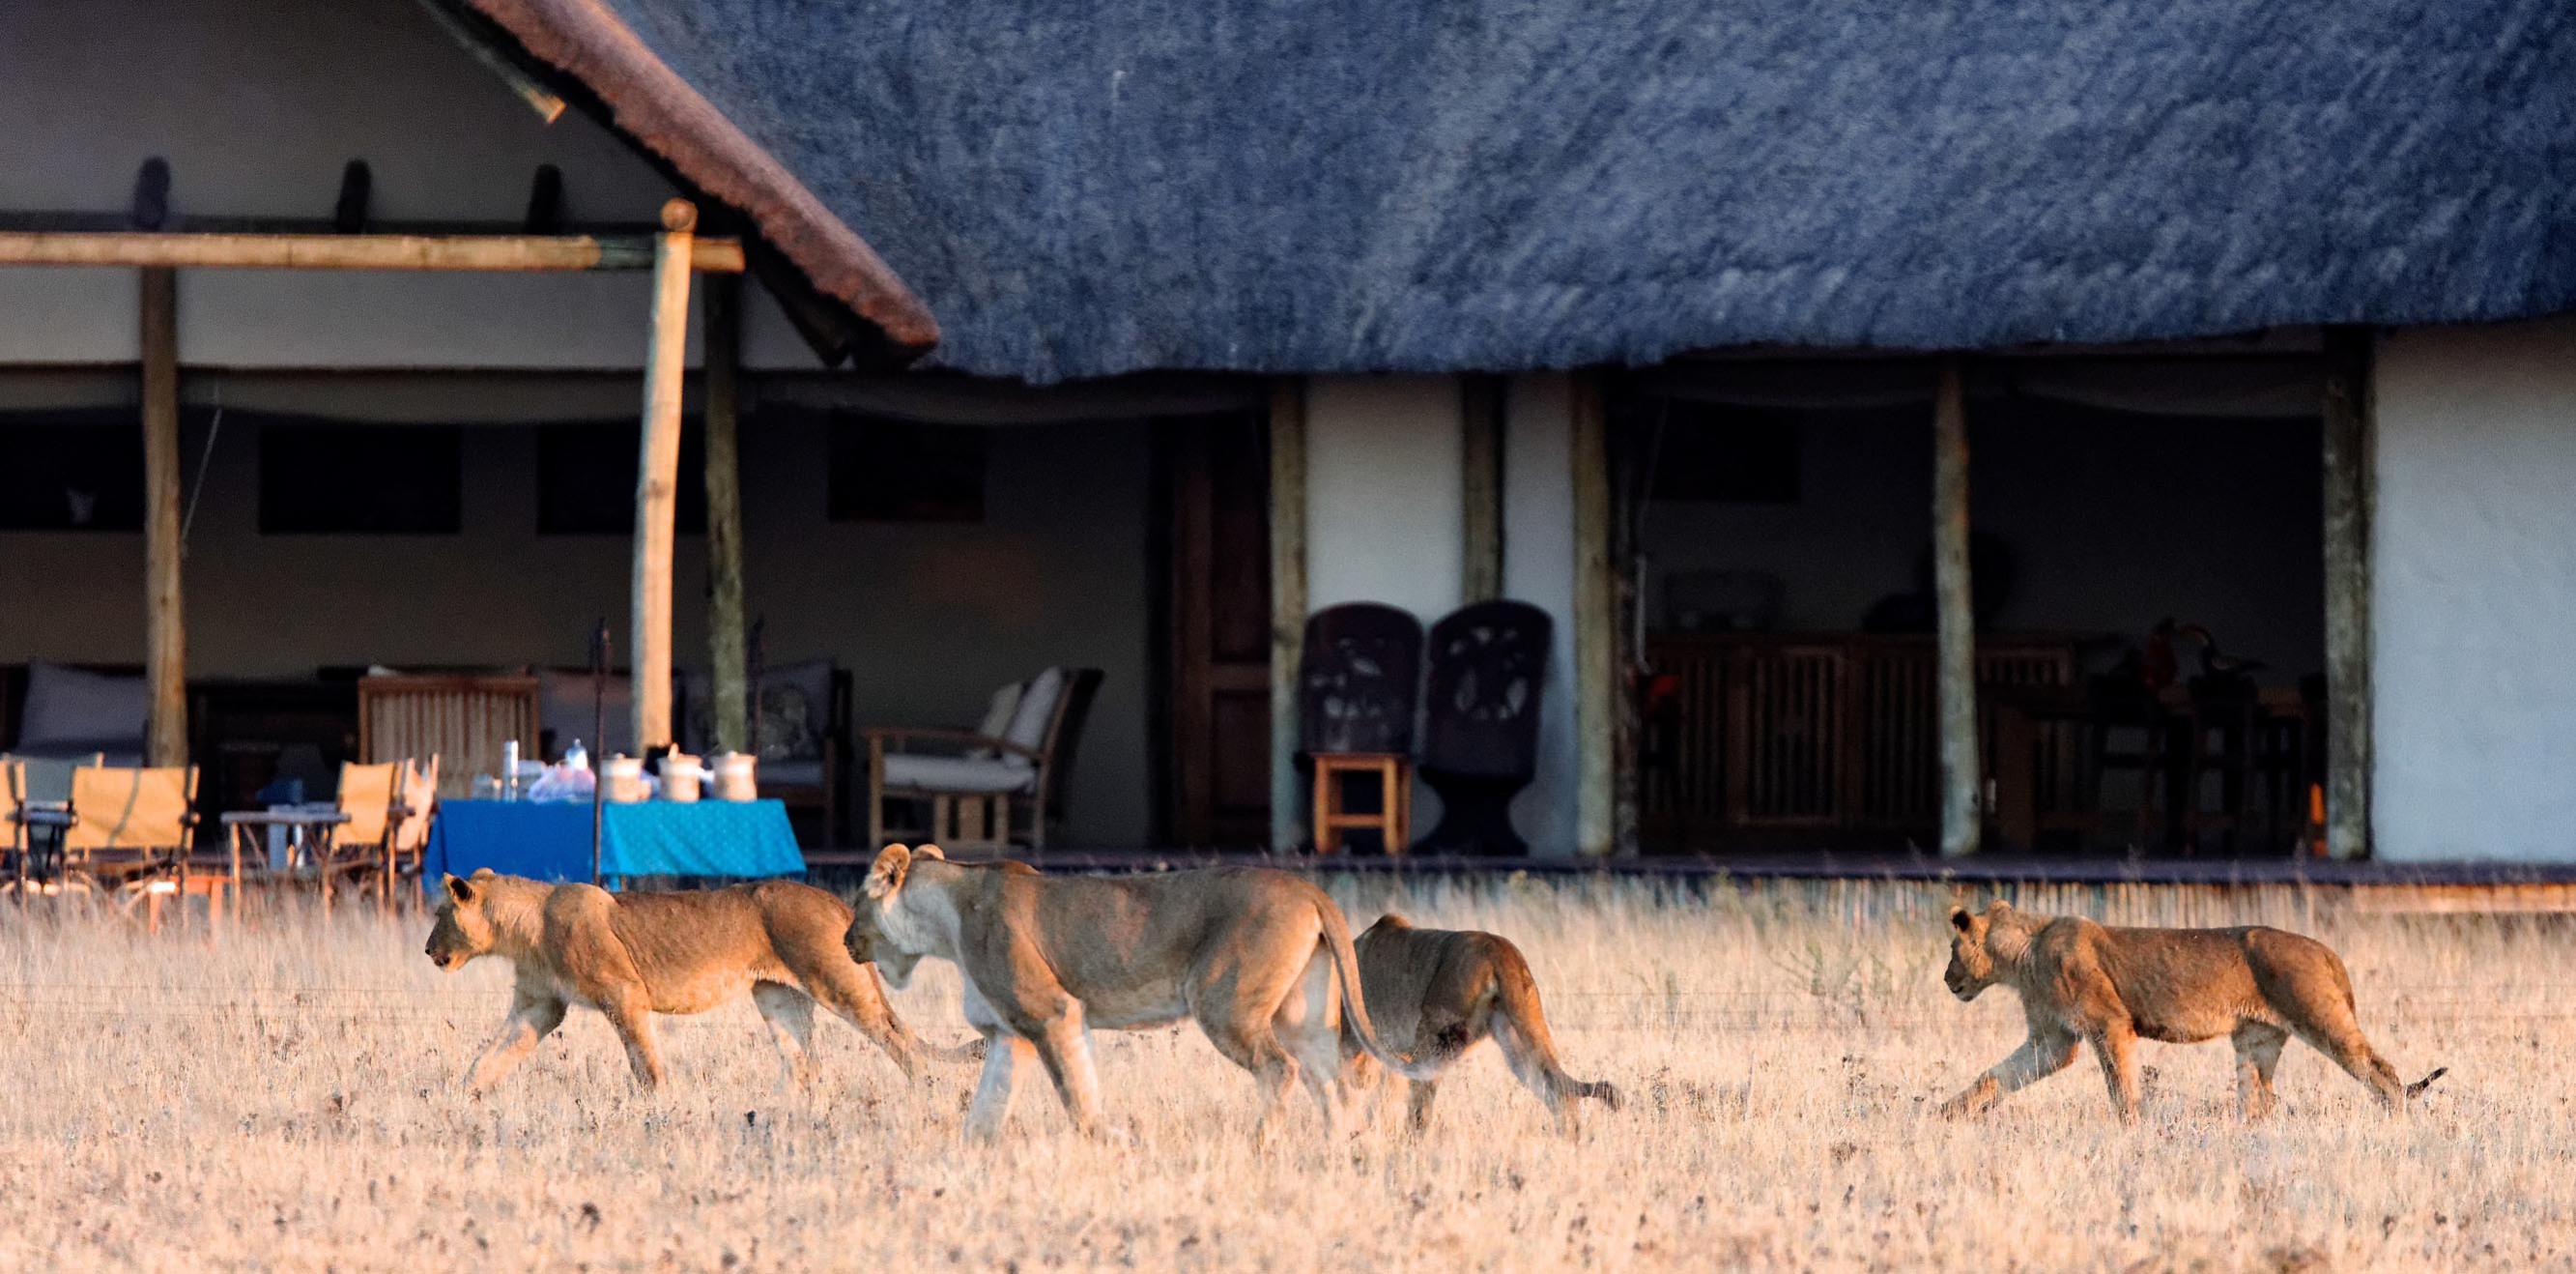 Somies amb un viatge inoblidable per Kenya? Podem fer-ho realitat, només tria el teu estil de safari.